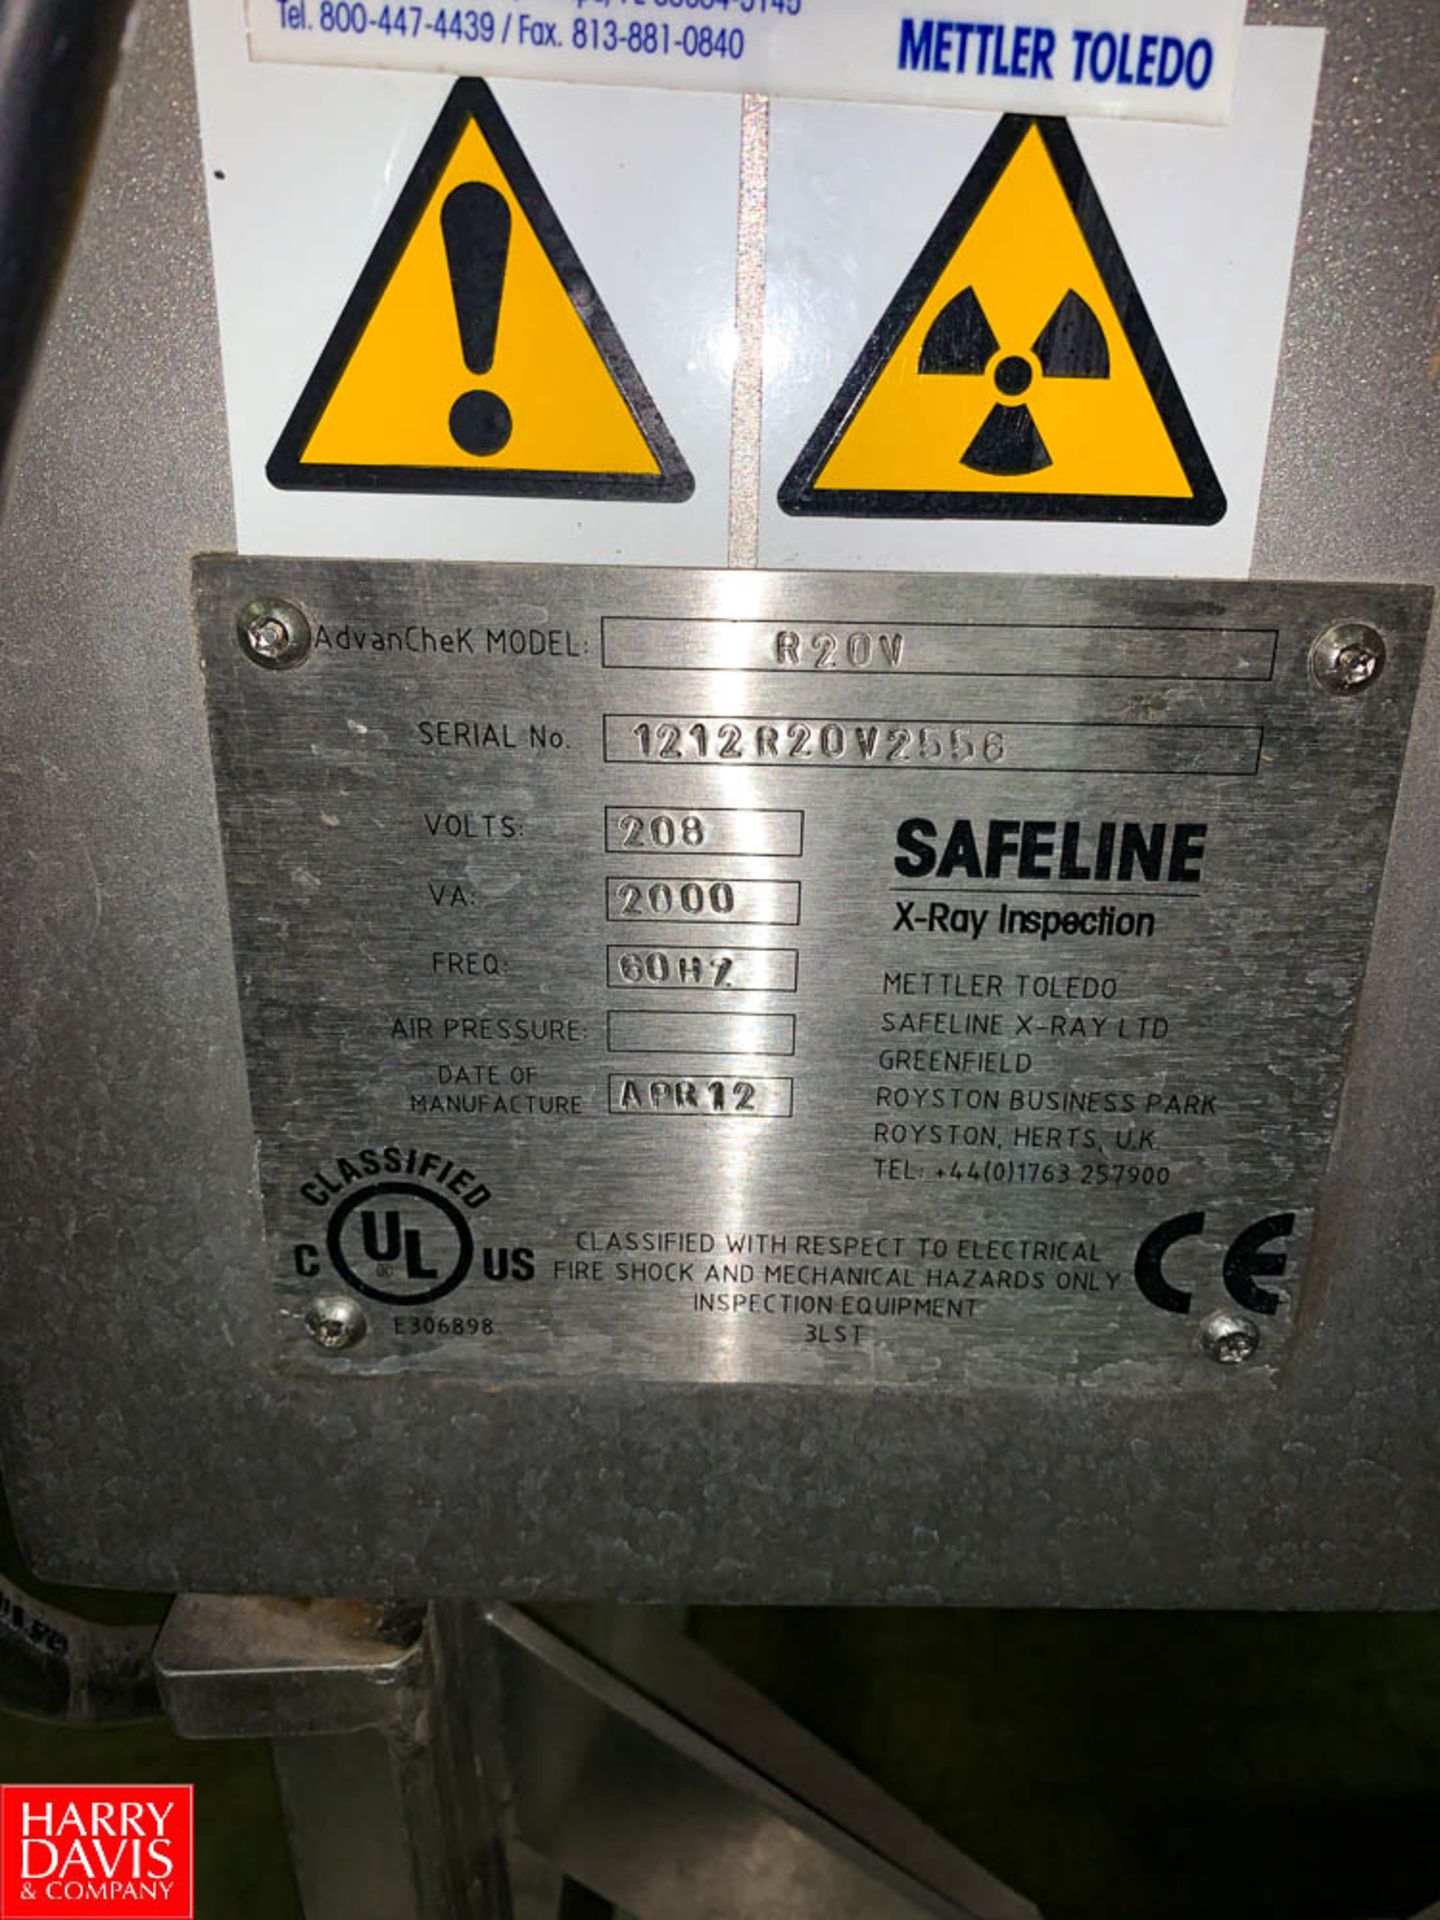 2012 Mettler Toledo Safeline S/S X Ray Metal Detector, Model: R20V, S/N: 121ZR20V2556, 13" Wide Belt - Image 2 of 2